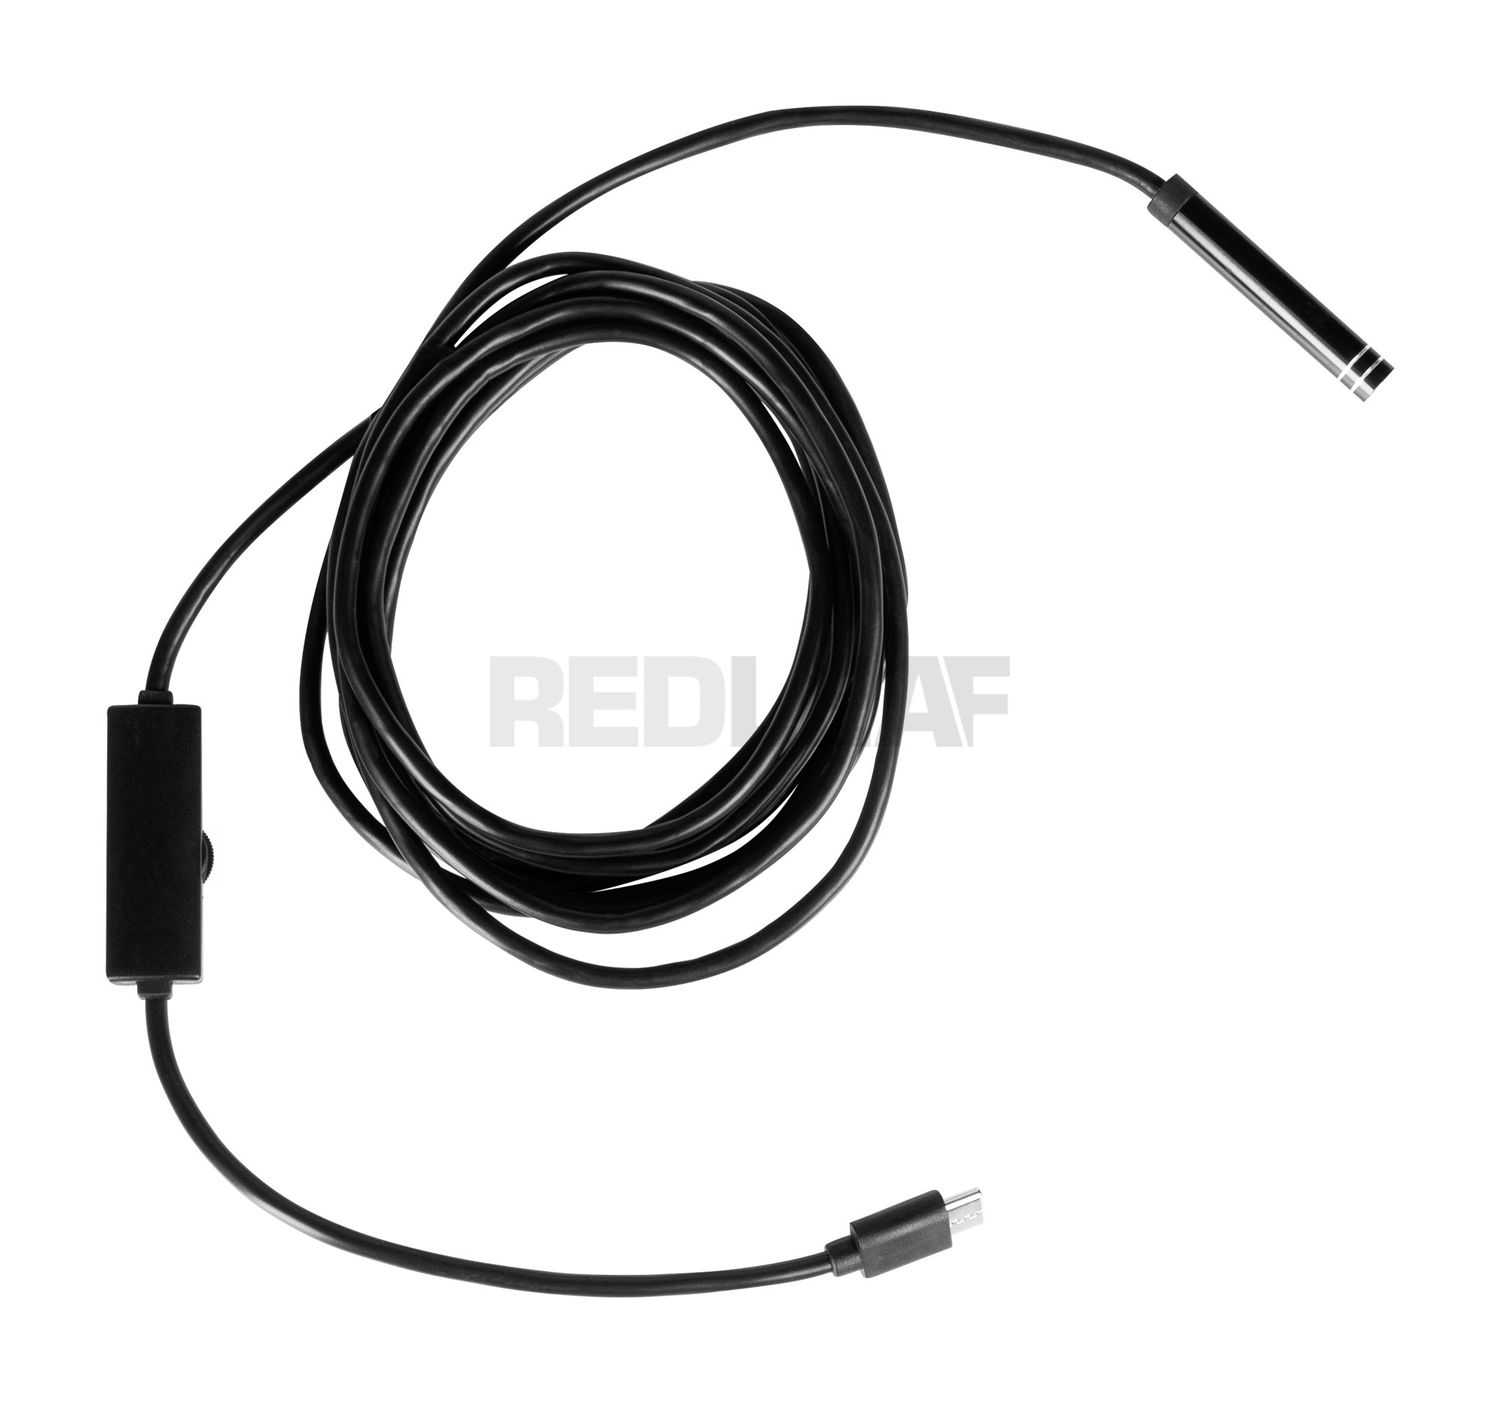 Endoskop USB-C Redleaf RDE-403UR - sztywny kabel 3 m